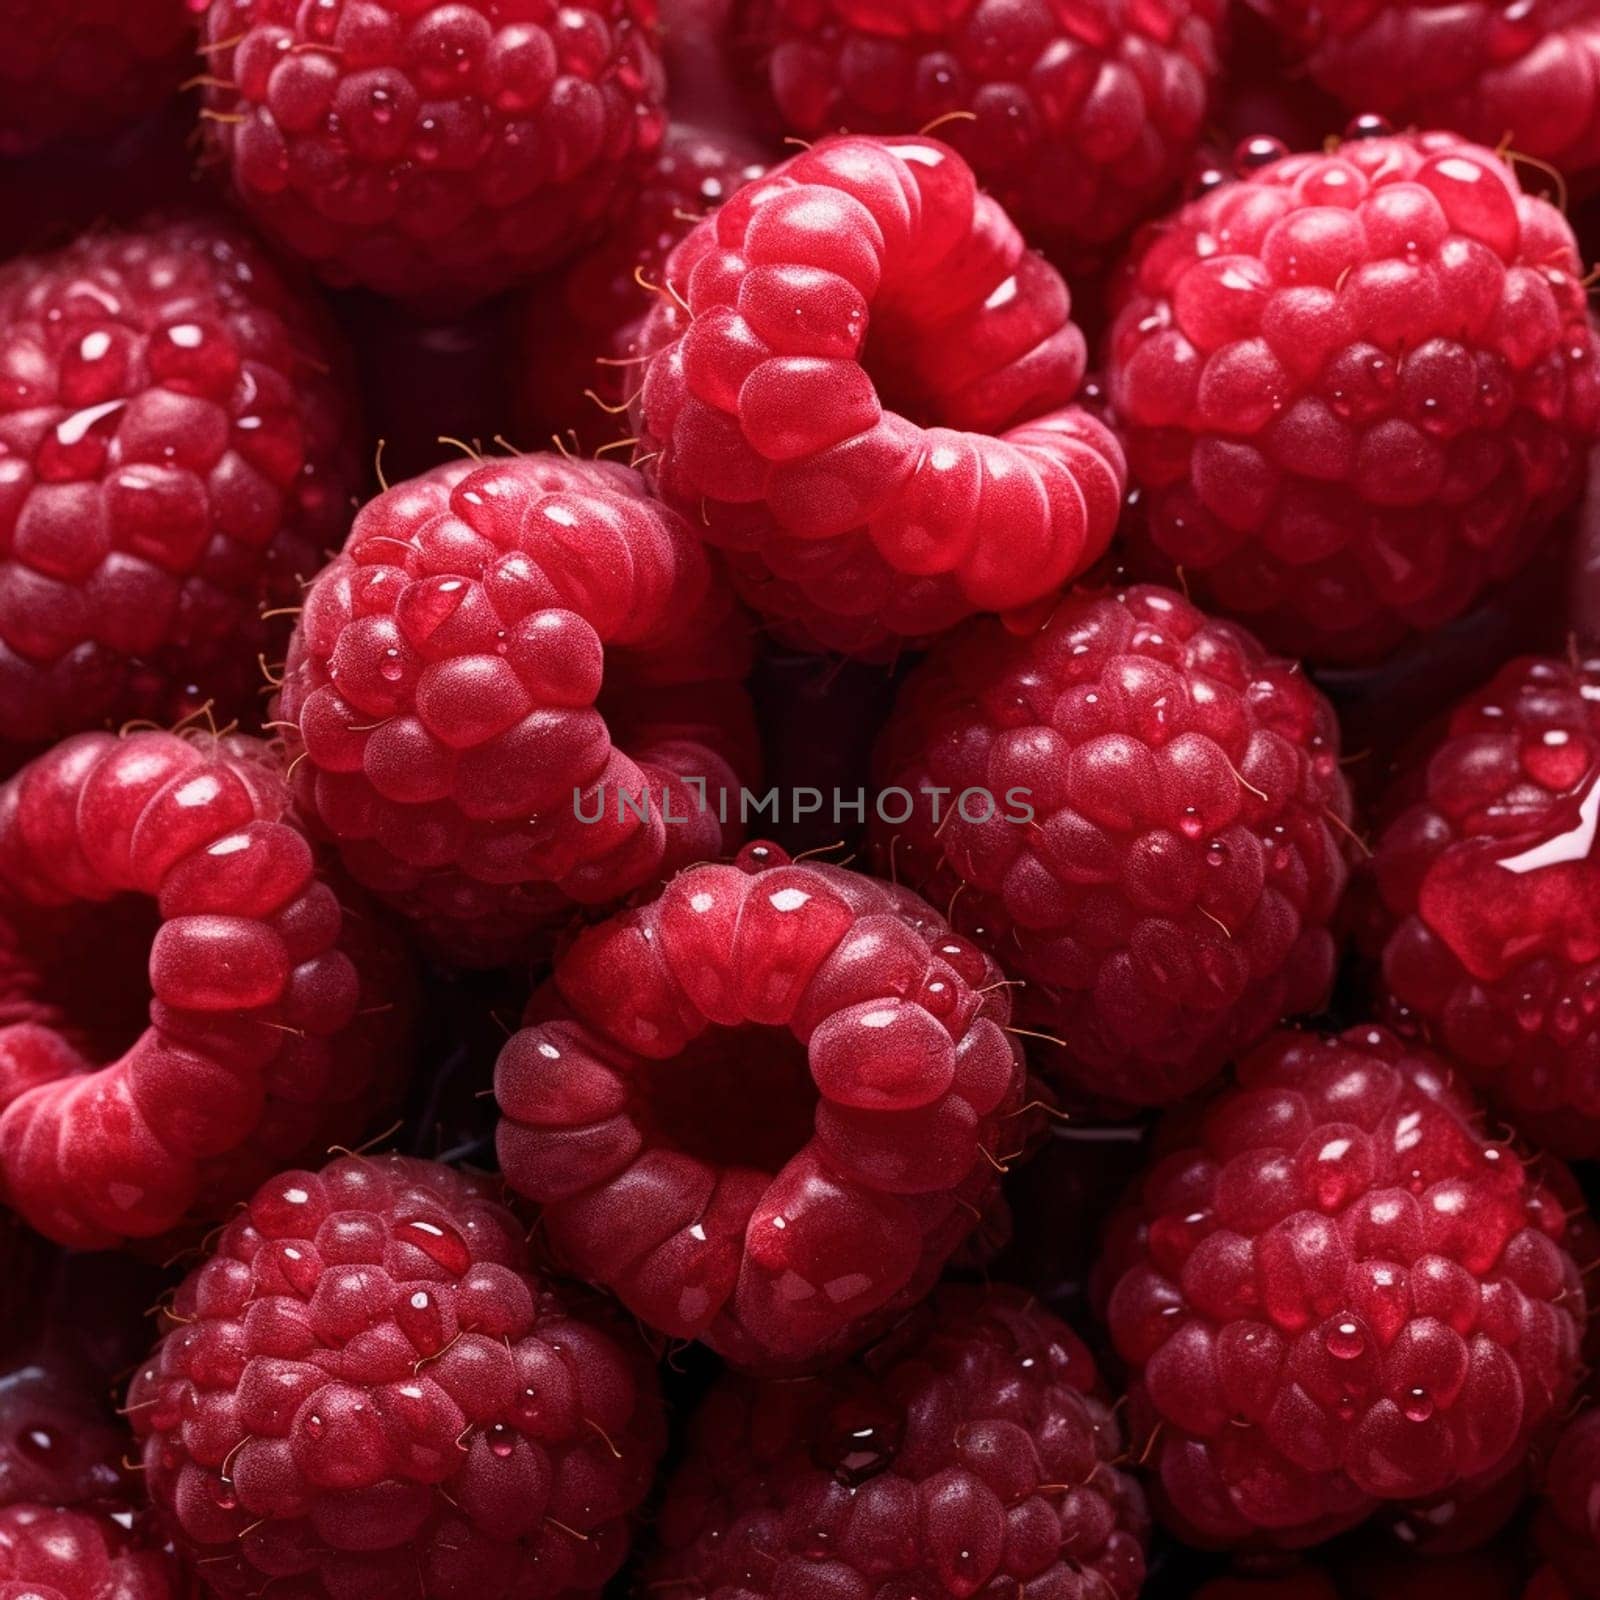 Juicy raspberries macro photography by ekaterinabyuksel